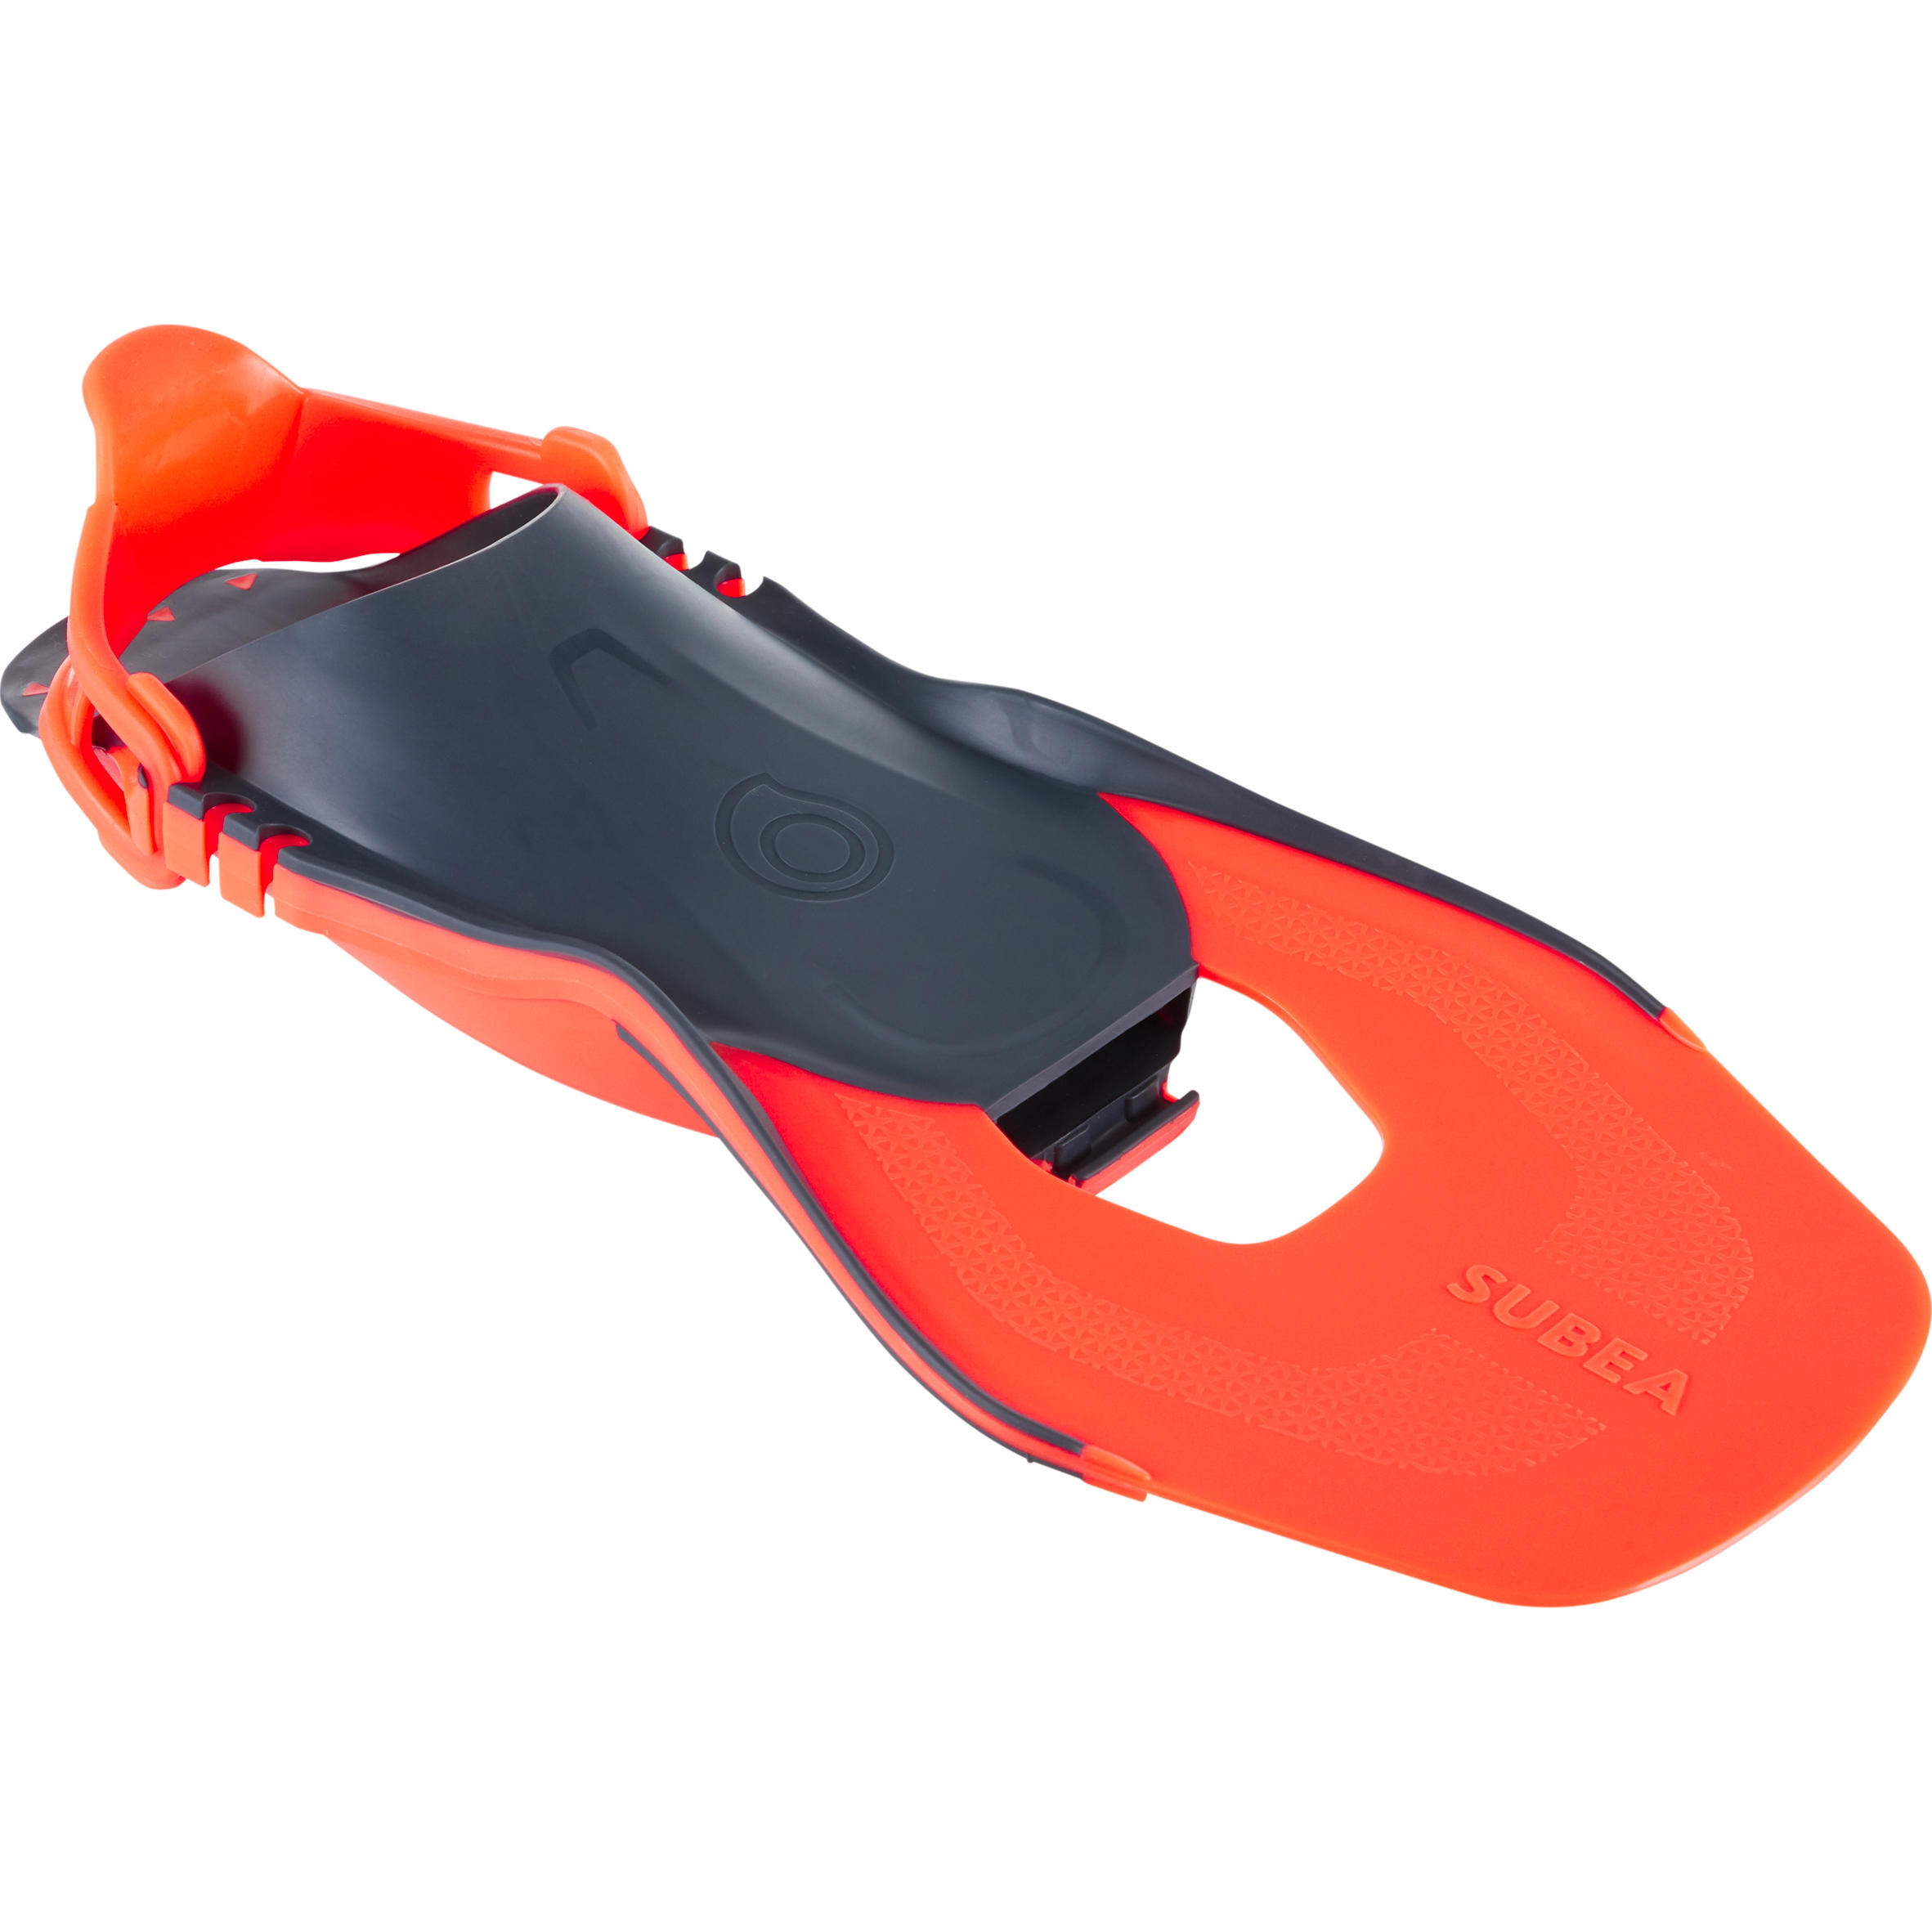 [ส่งฟรี ] ตีนกบดำน้ำตื้นปรับได้สำหรับผู้ใหญ่รุ่น SNK 500 Adult adjustable snorkelling fins SNK 100 Orange ของแท้ ตีนกบว่ายน้ำ ตีนกบดำน้ำ ตีนกบดำน้ำลึก มีรับประกัน คุณภาพดี โปรโมชั่นสุดคุ้ม โค้งสุดท้าย